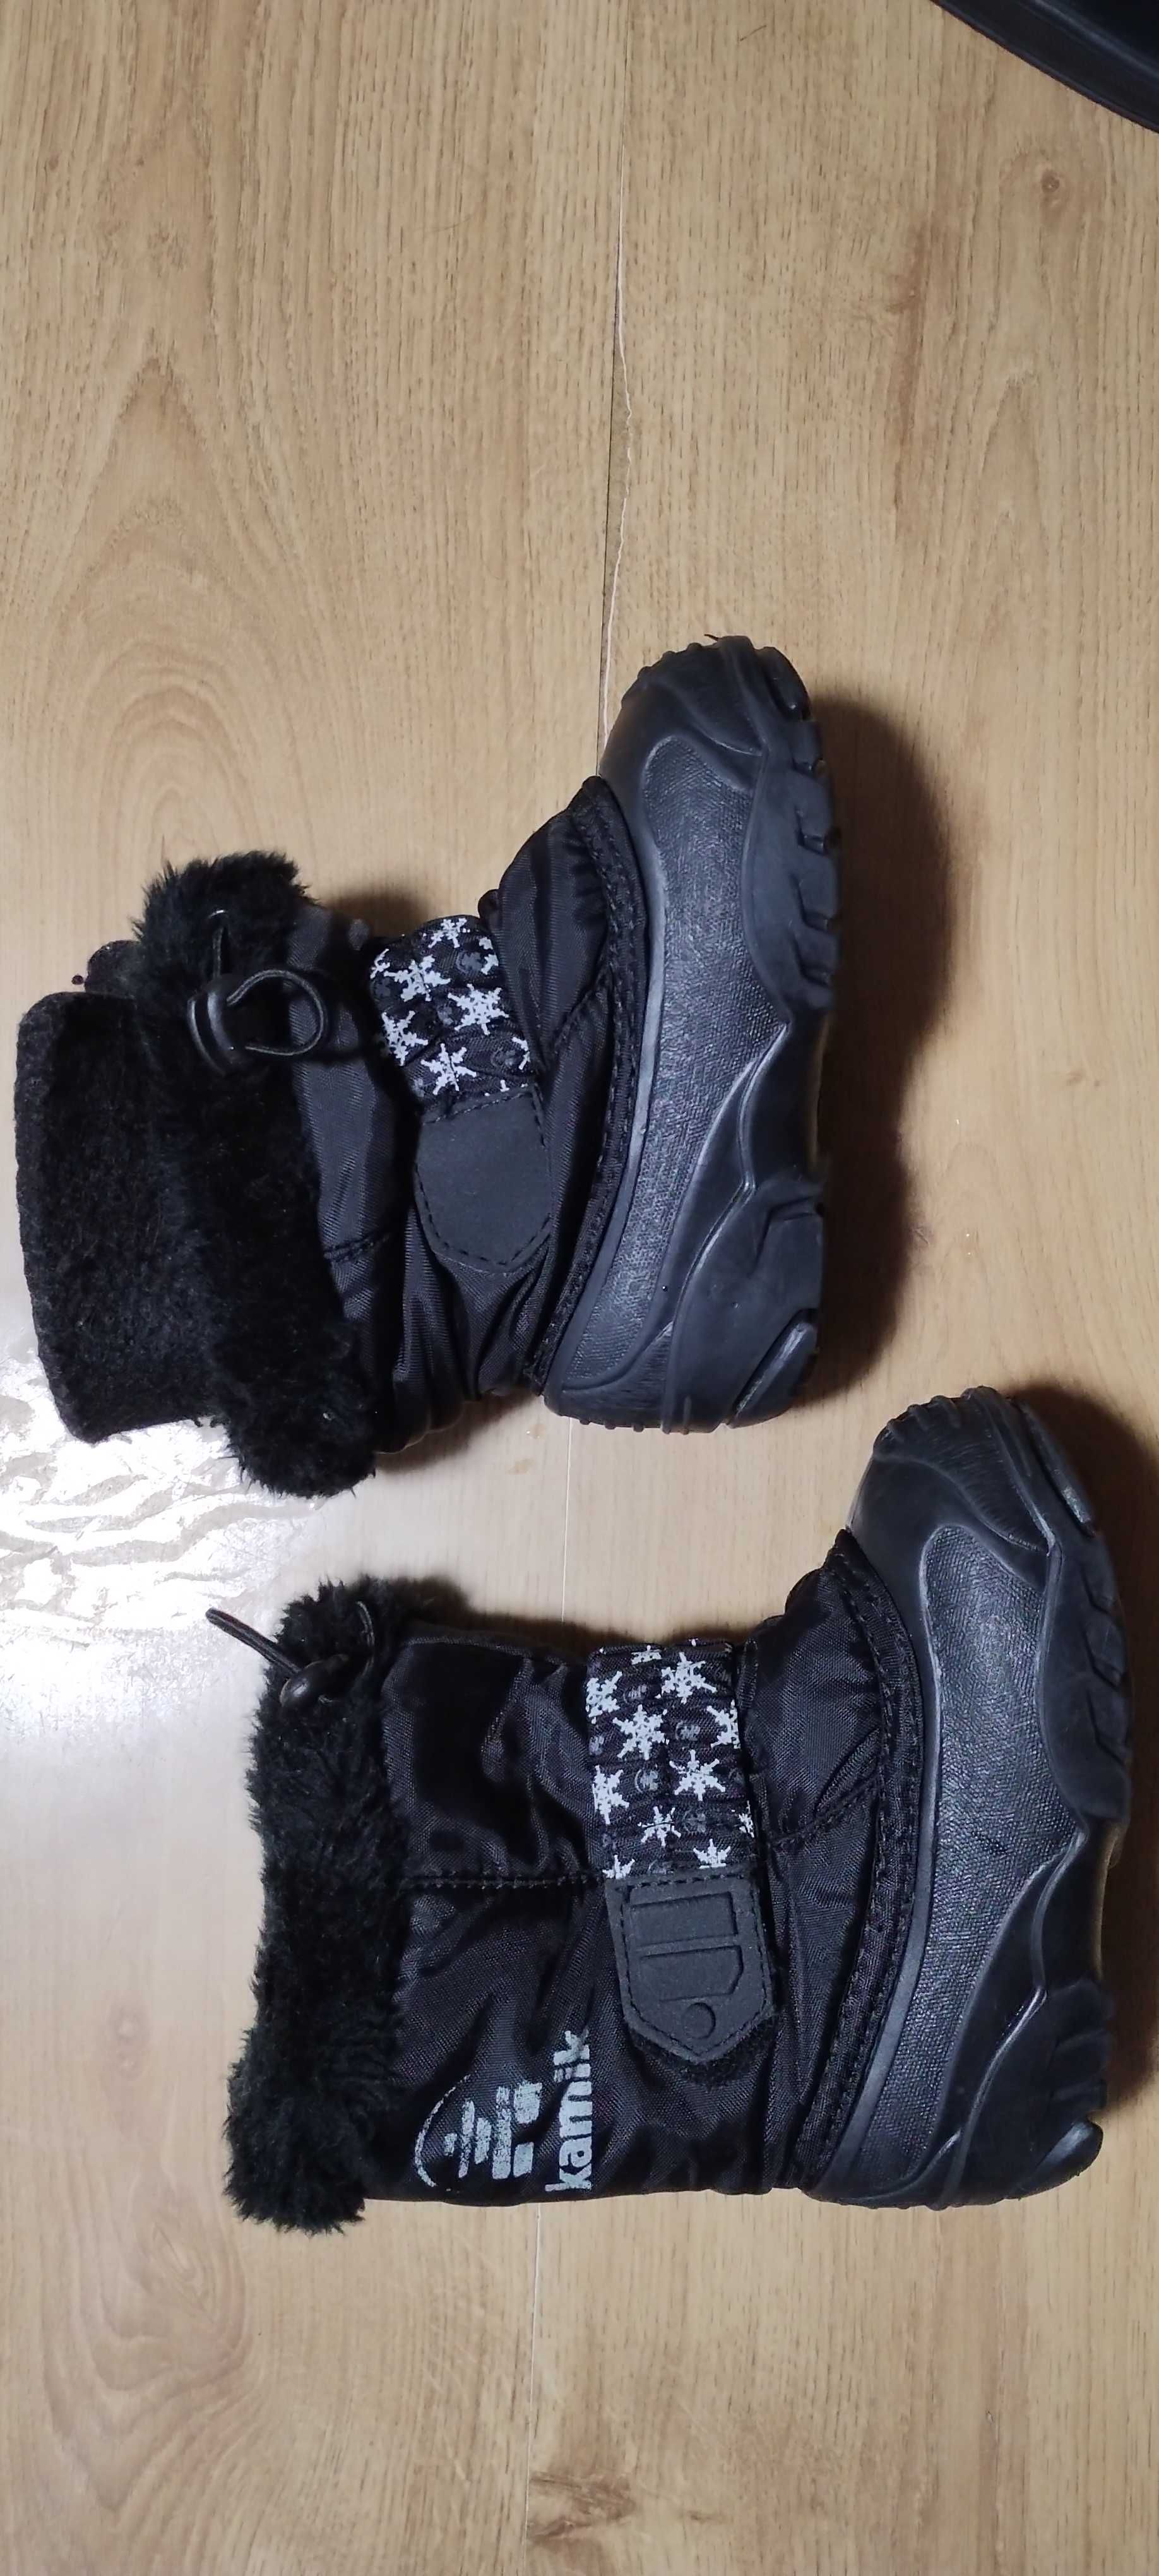 Buty zimowe śniegowce Kamik dla dzieci rozm. 6 (23) wkładka 13,5-14 cm